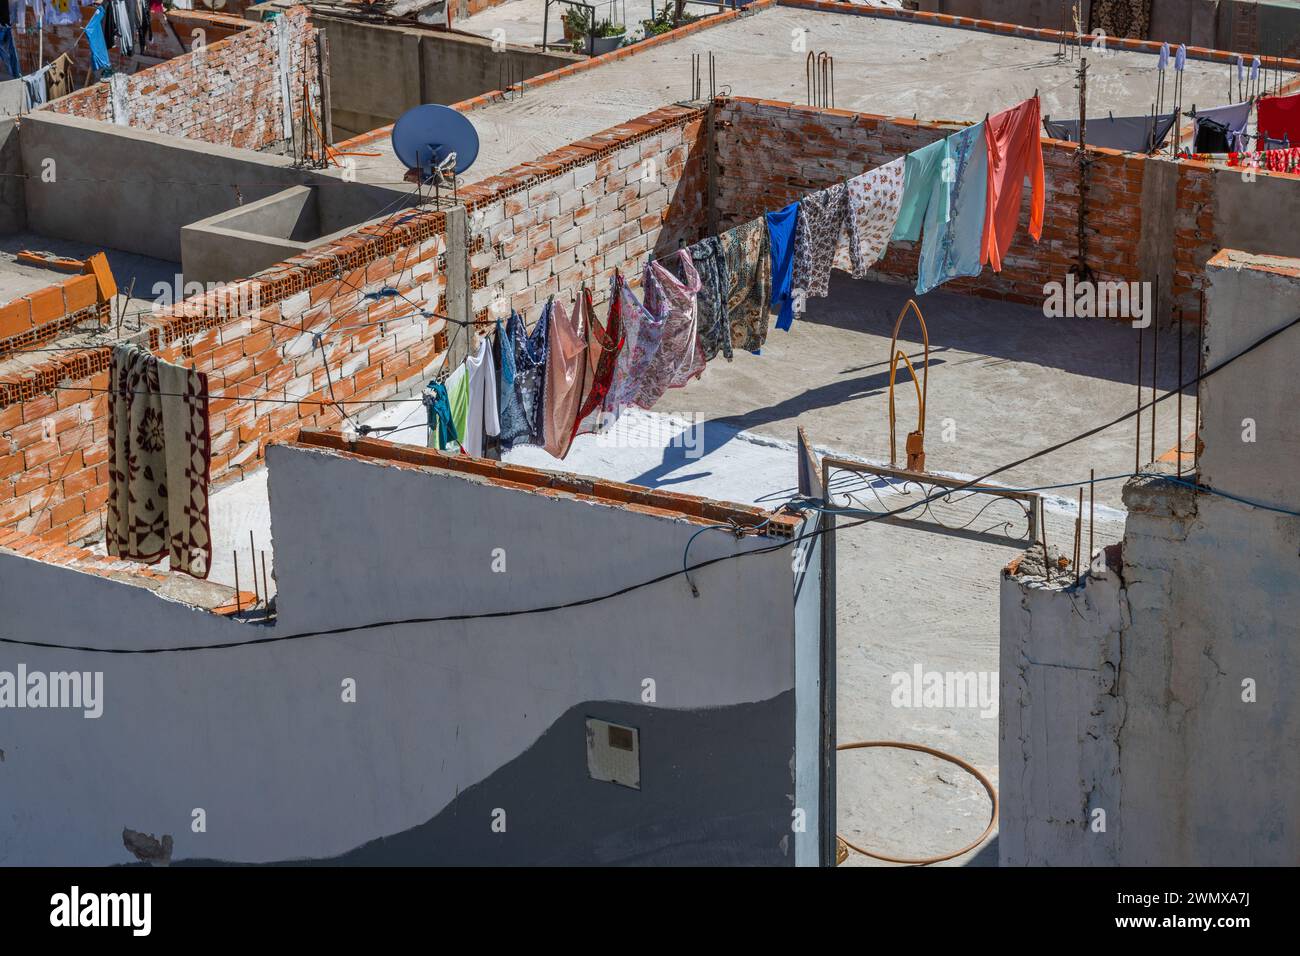 Séchage de blanchisserie coloré sur un toit-terrasse à Tétouan, Maroc Banque D'Images